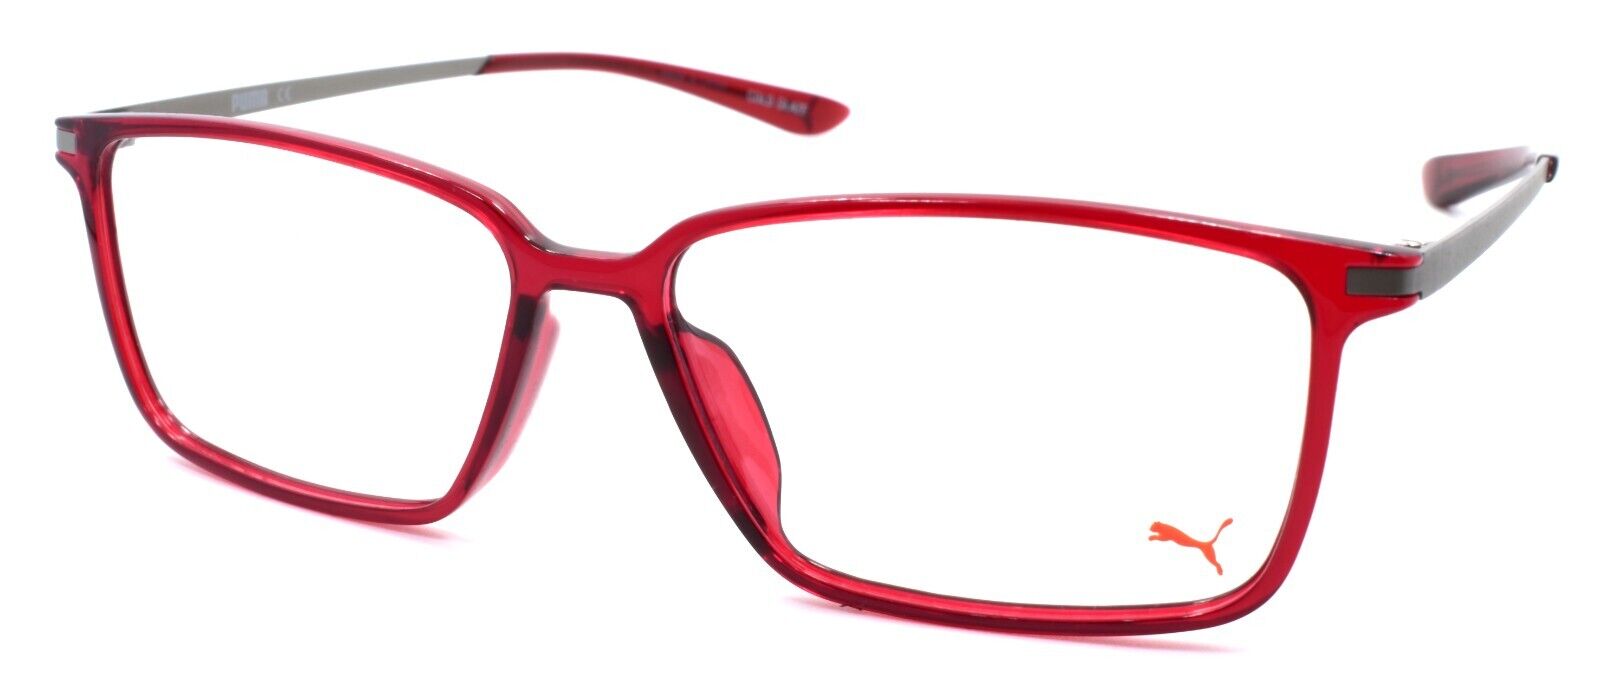 1-PUMA PU0114O 004 Eyeglasses Frames 55-14-145 Burgundy Red / Silver-889652063591-IKSpecs